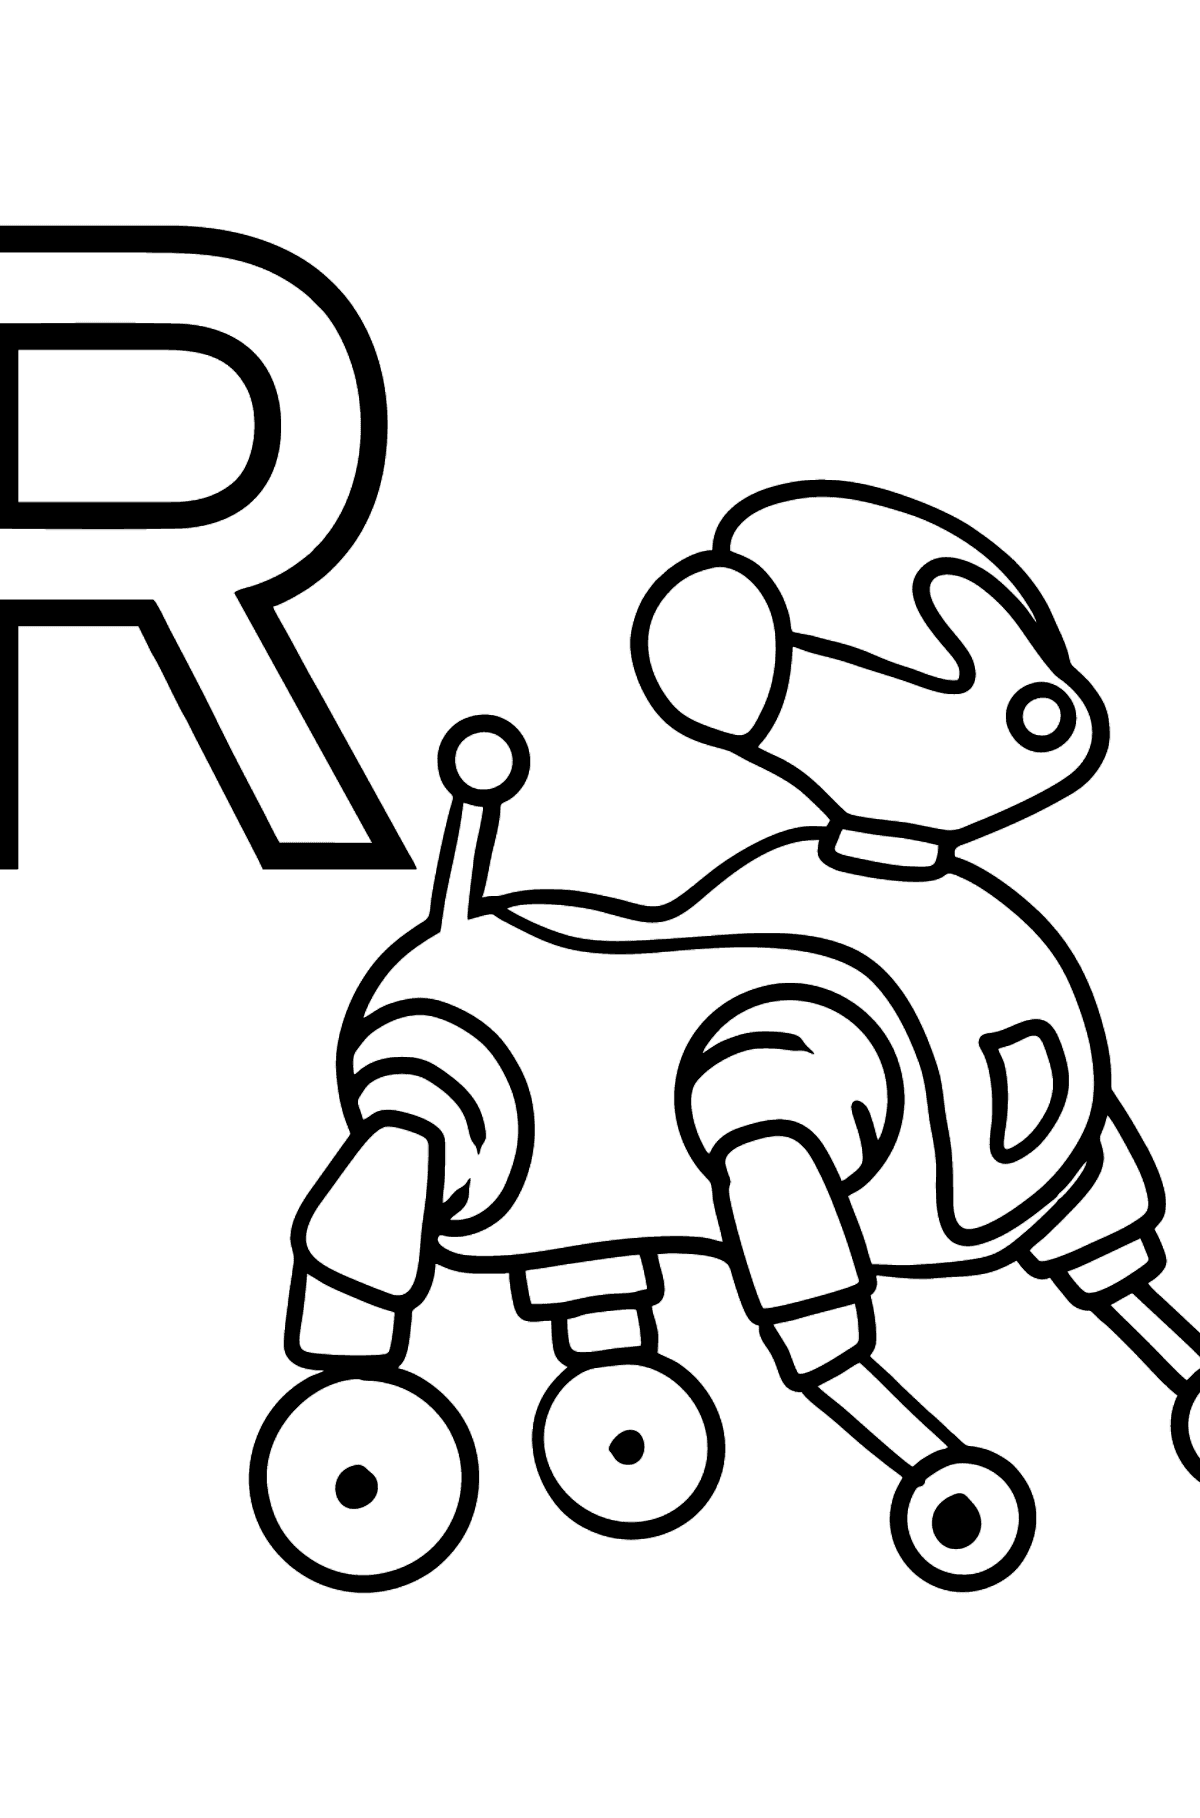 Раскраска Буква R французского алфавита - ROBOT - Картинки для Детей